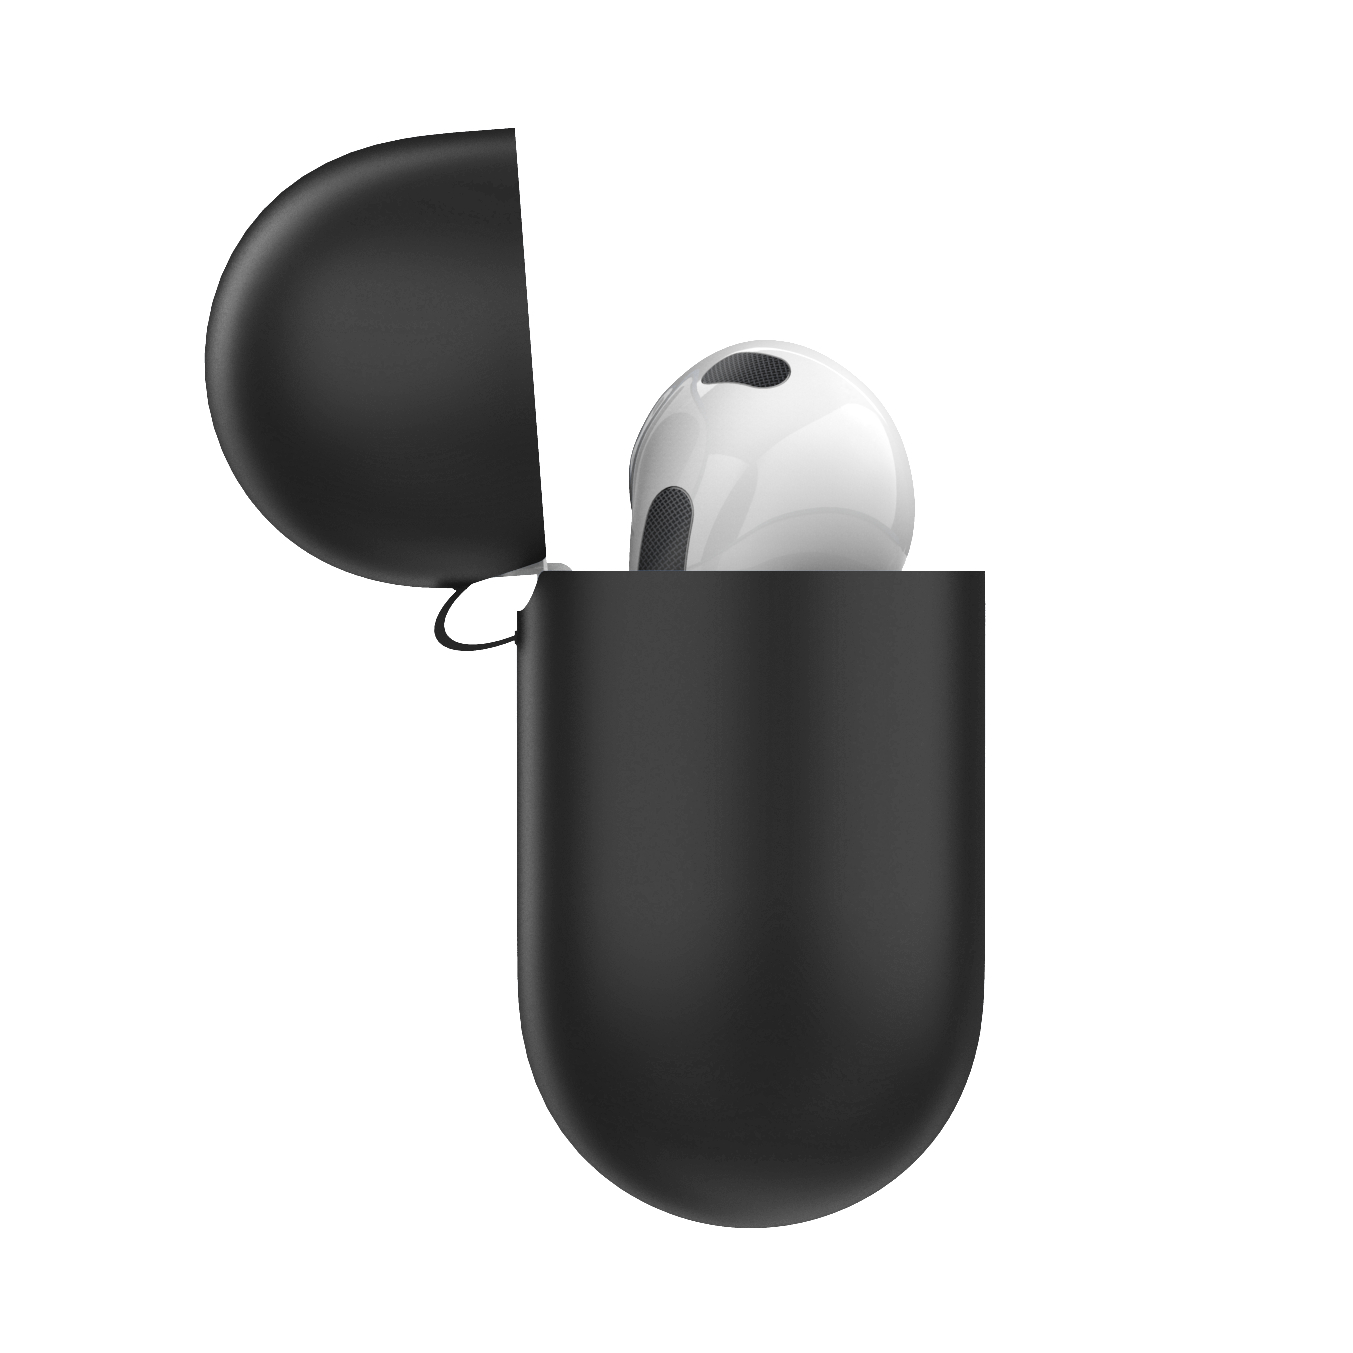 KEYBUDZ Elevate Apple AirPods Karabiner für Schutzhülle mit Schutzcase 3